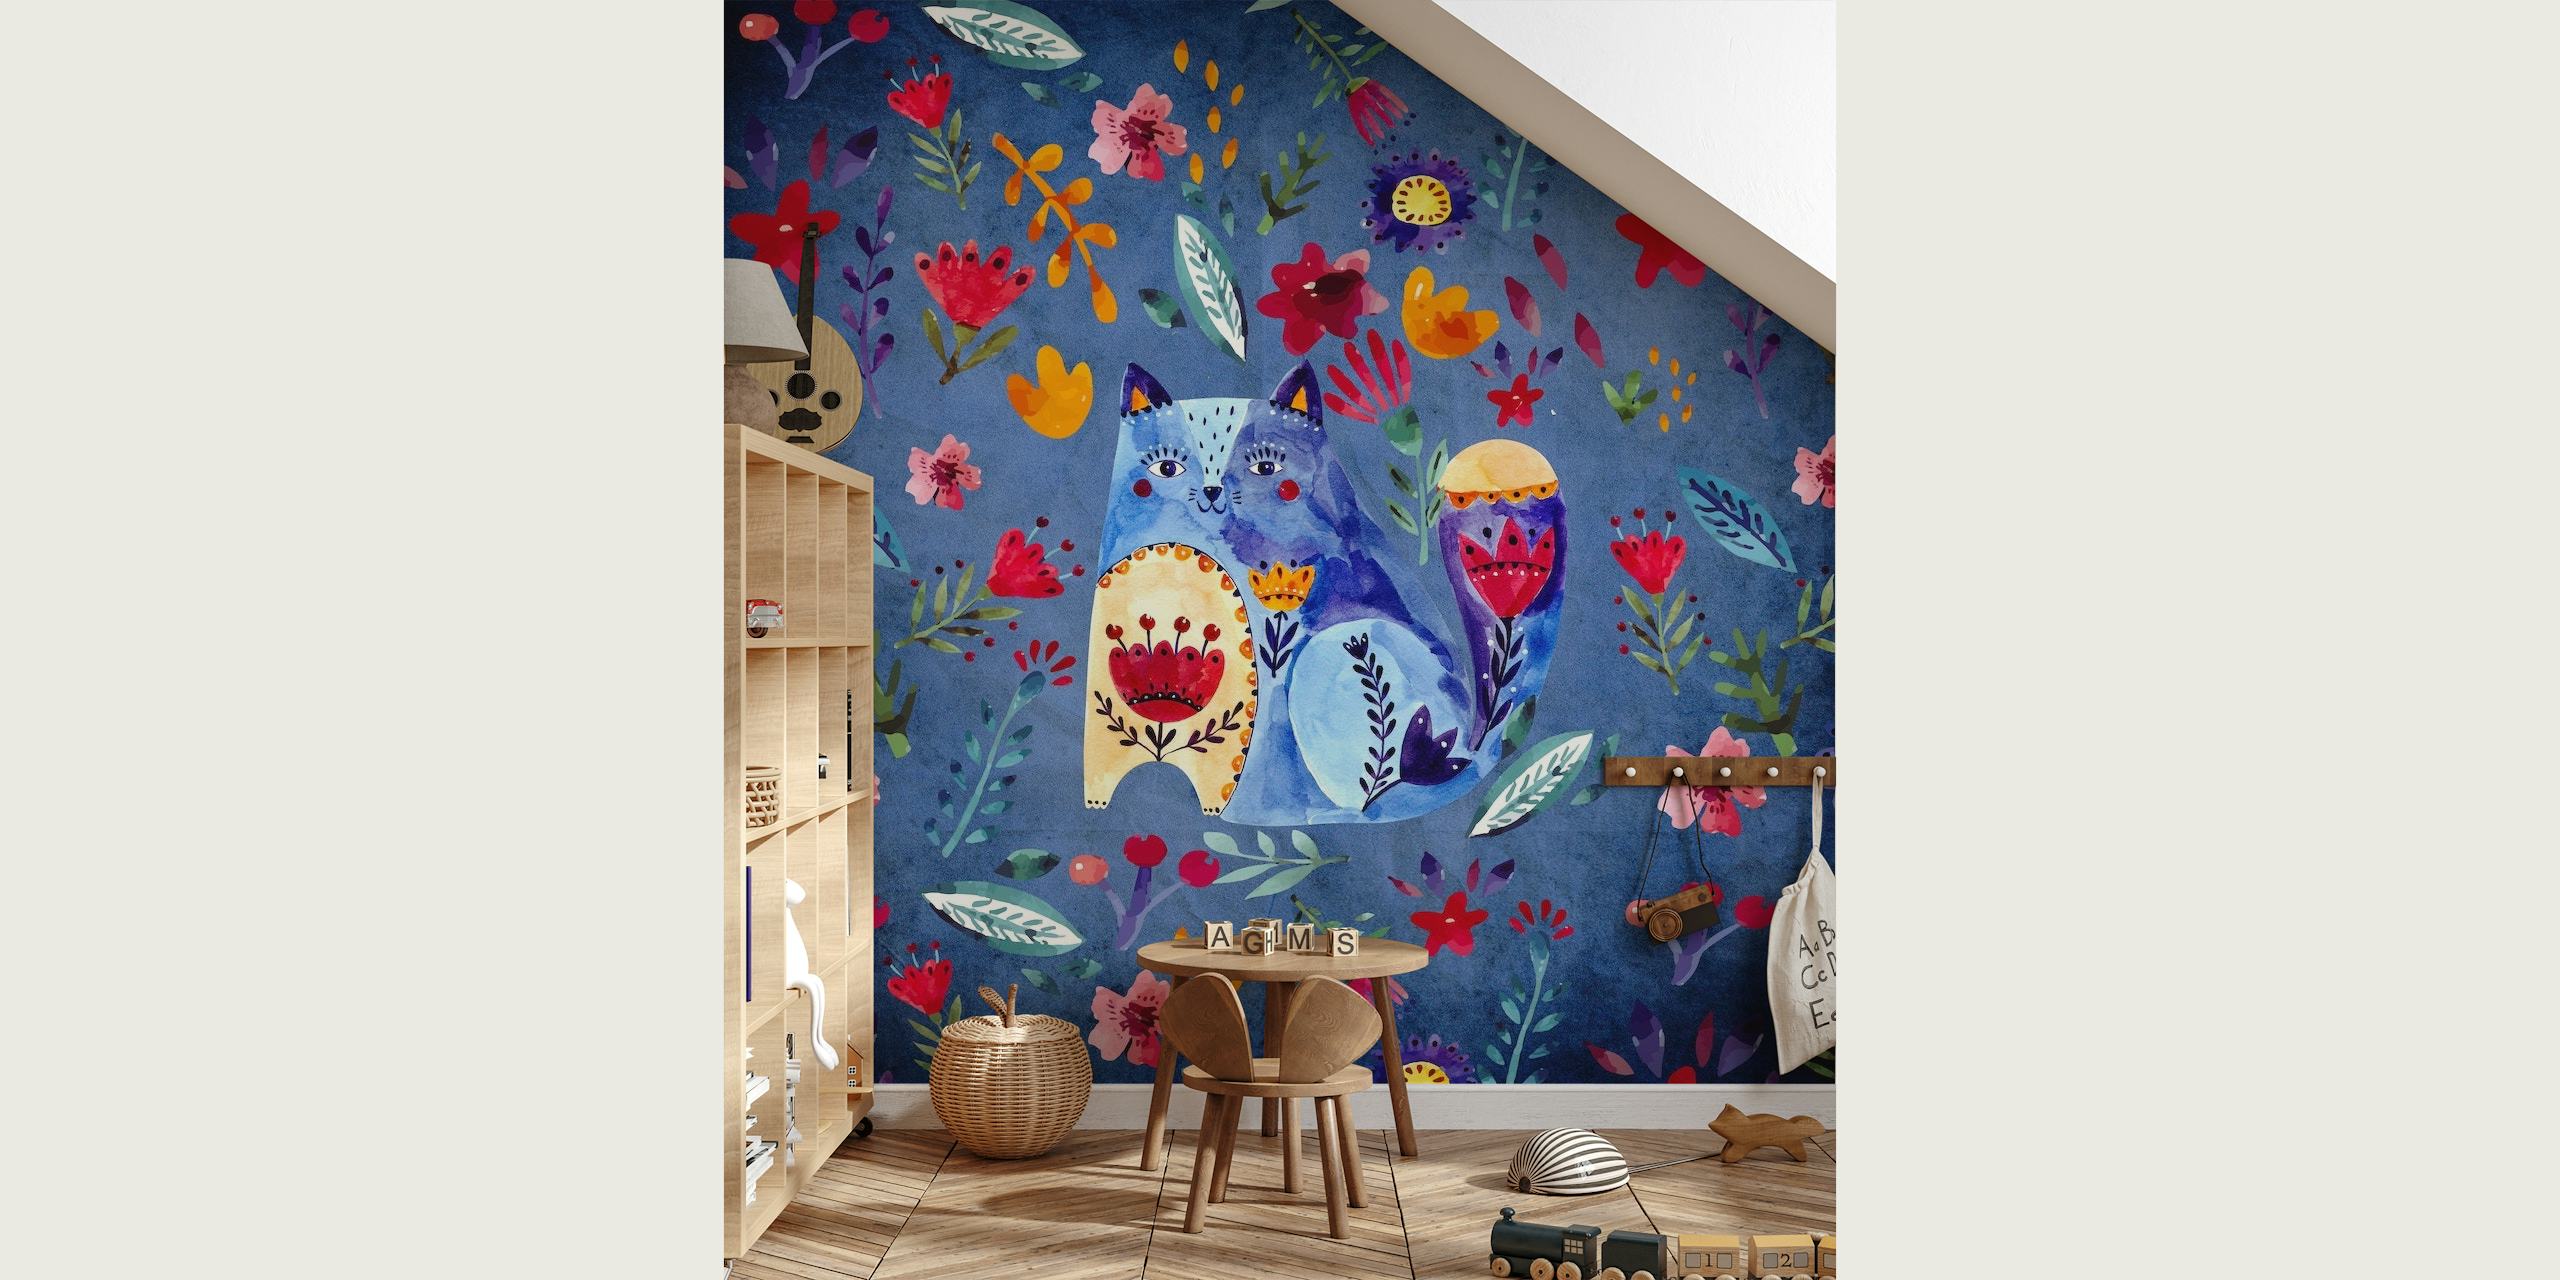 Fotomural Doodle Cat and Flowers con gatos dibujados a mano y coloridos motivos florales sobre un fondo azul.